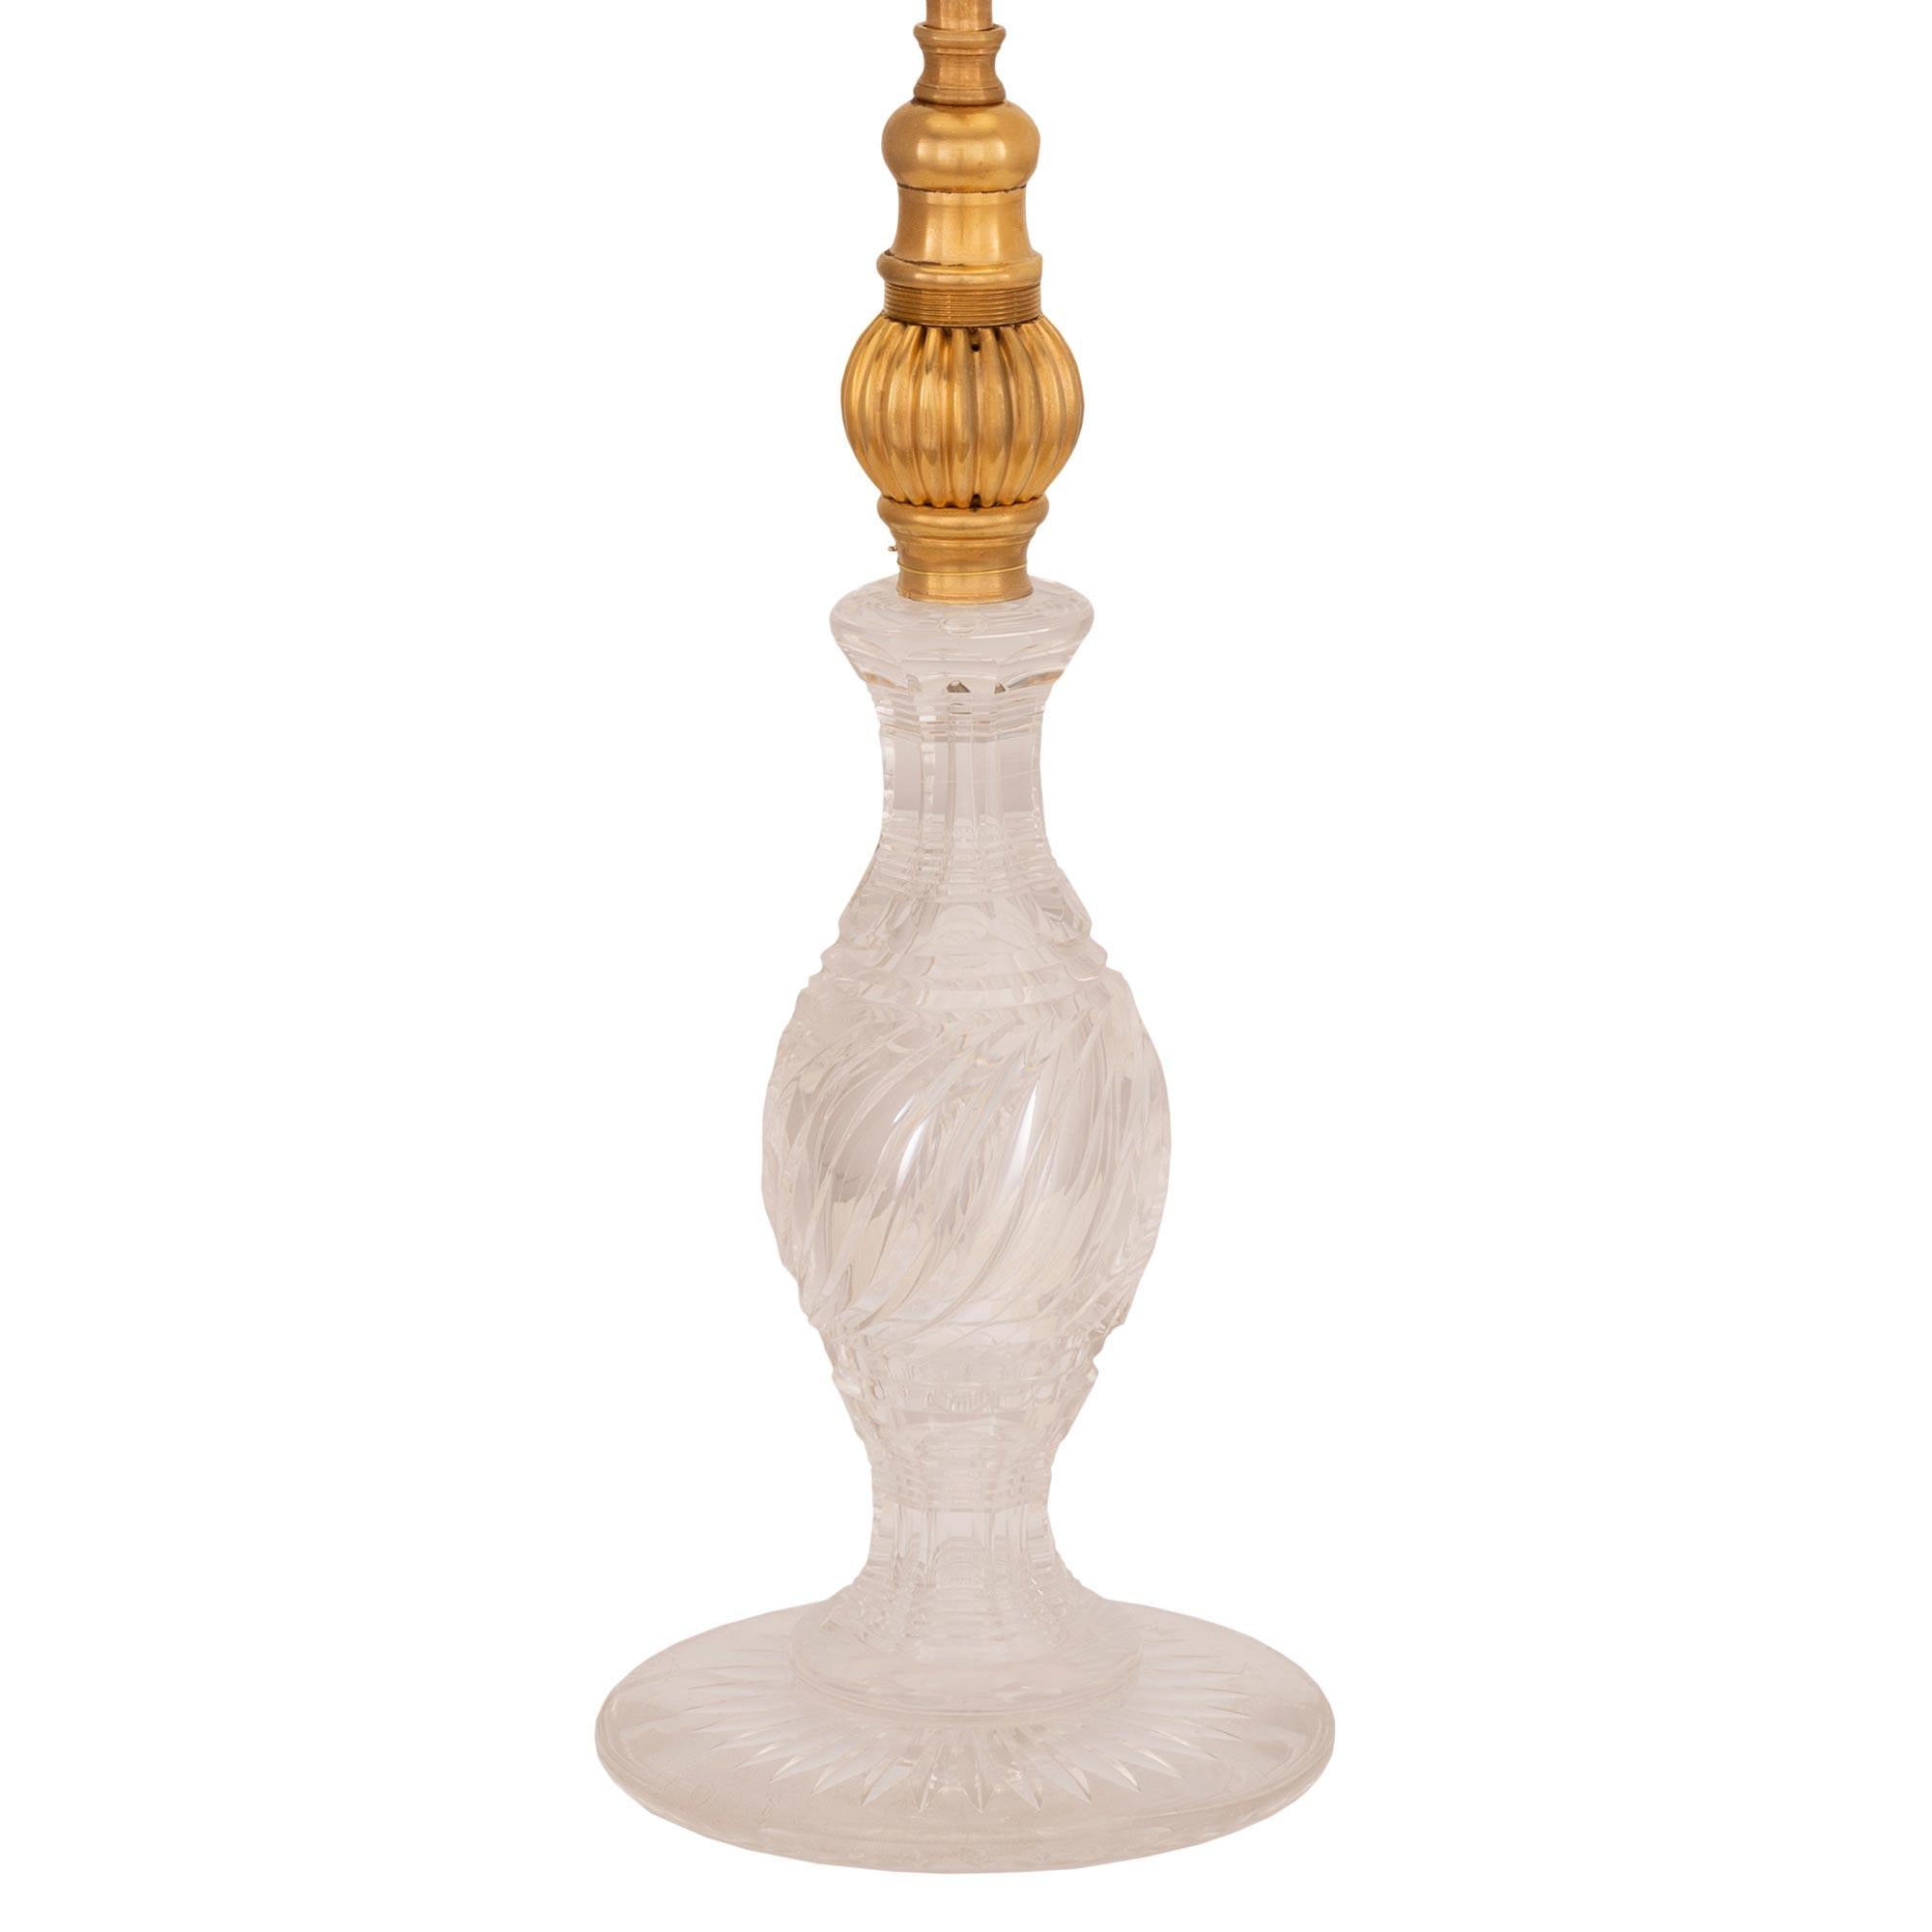 Une charmante lampe française du 19ème siècle, de style Louis XVI, en cristal de Baccarat et bronze doré. La lampe est surélevée par un corps en cristal de Baccarat très décoratif, avec une base circulaire feuillagée et un magnifique support central